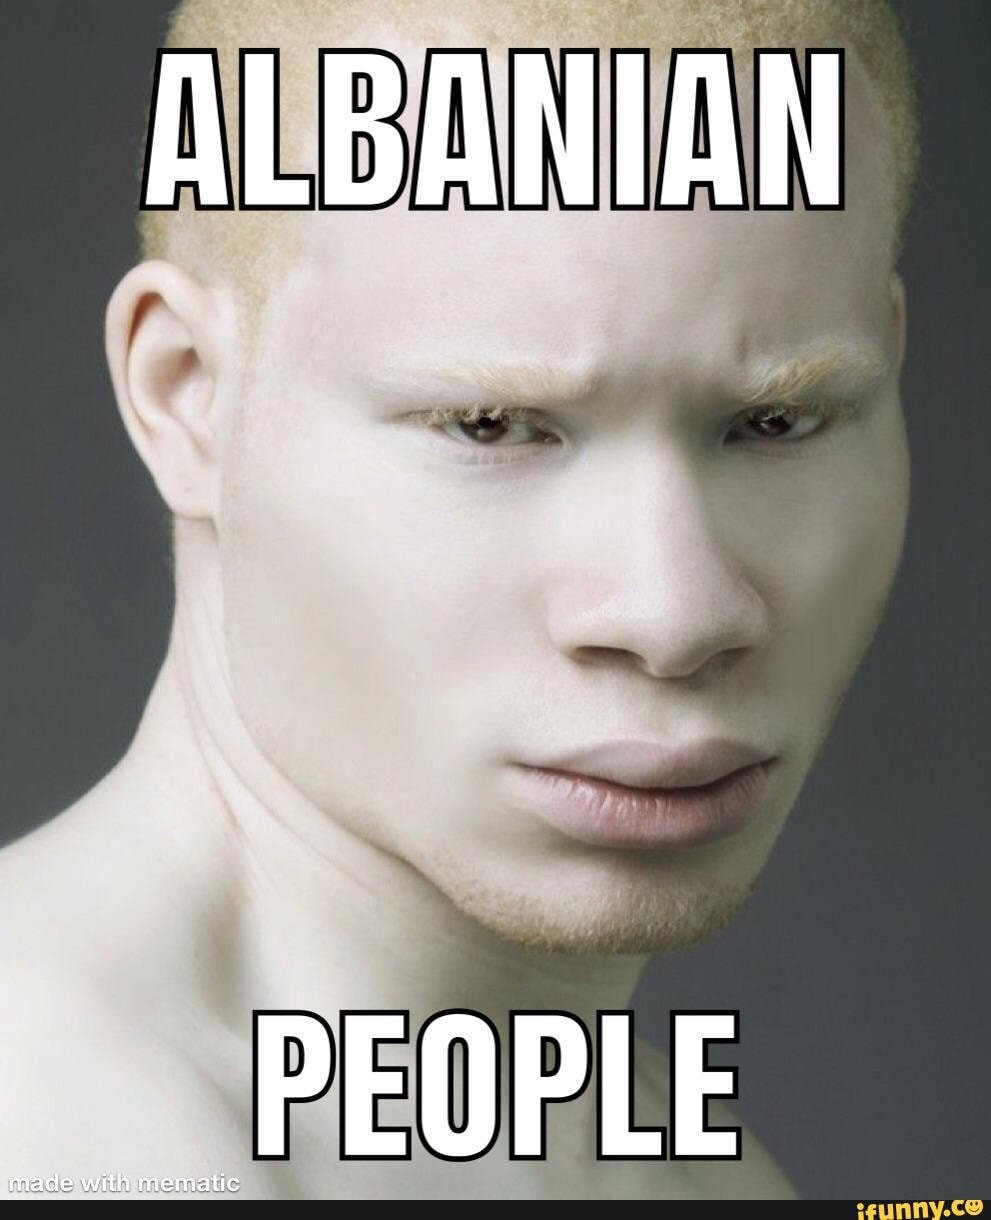 Белый негр. Сэр Маджор пейдж. Джуэл Джеффри фотомодель альбинос. Пауль актер альбинос. Мулат альбинос.